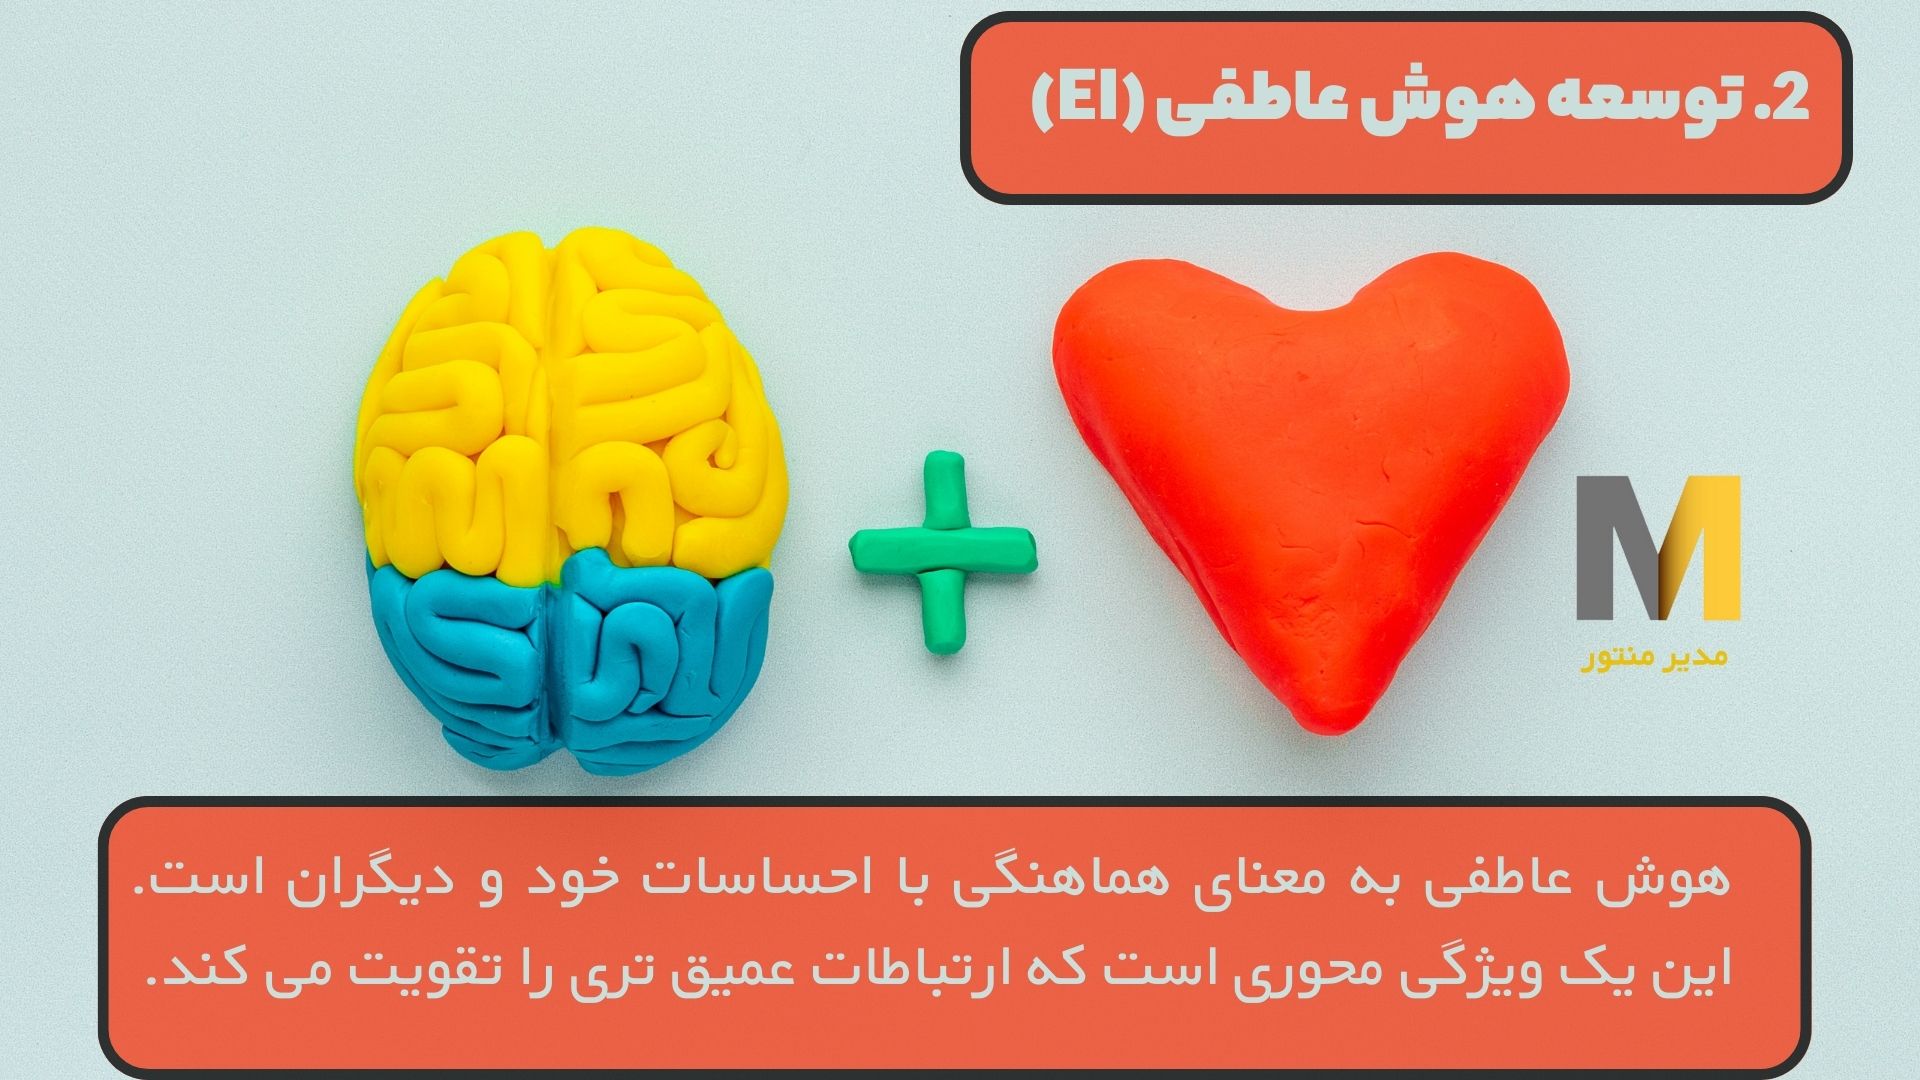 2. توسعه هوش عاطفی (EI)